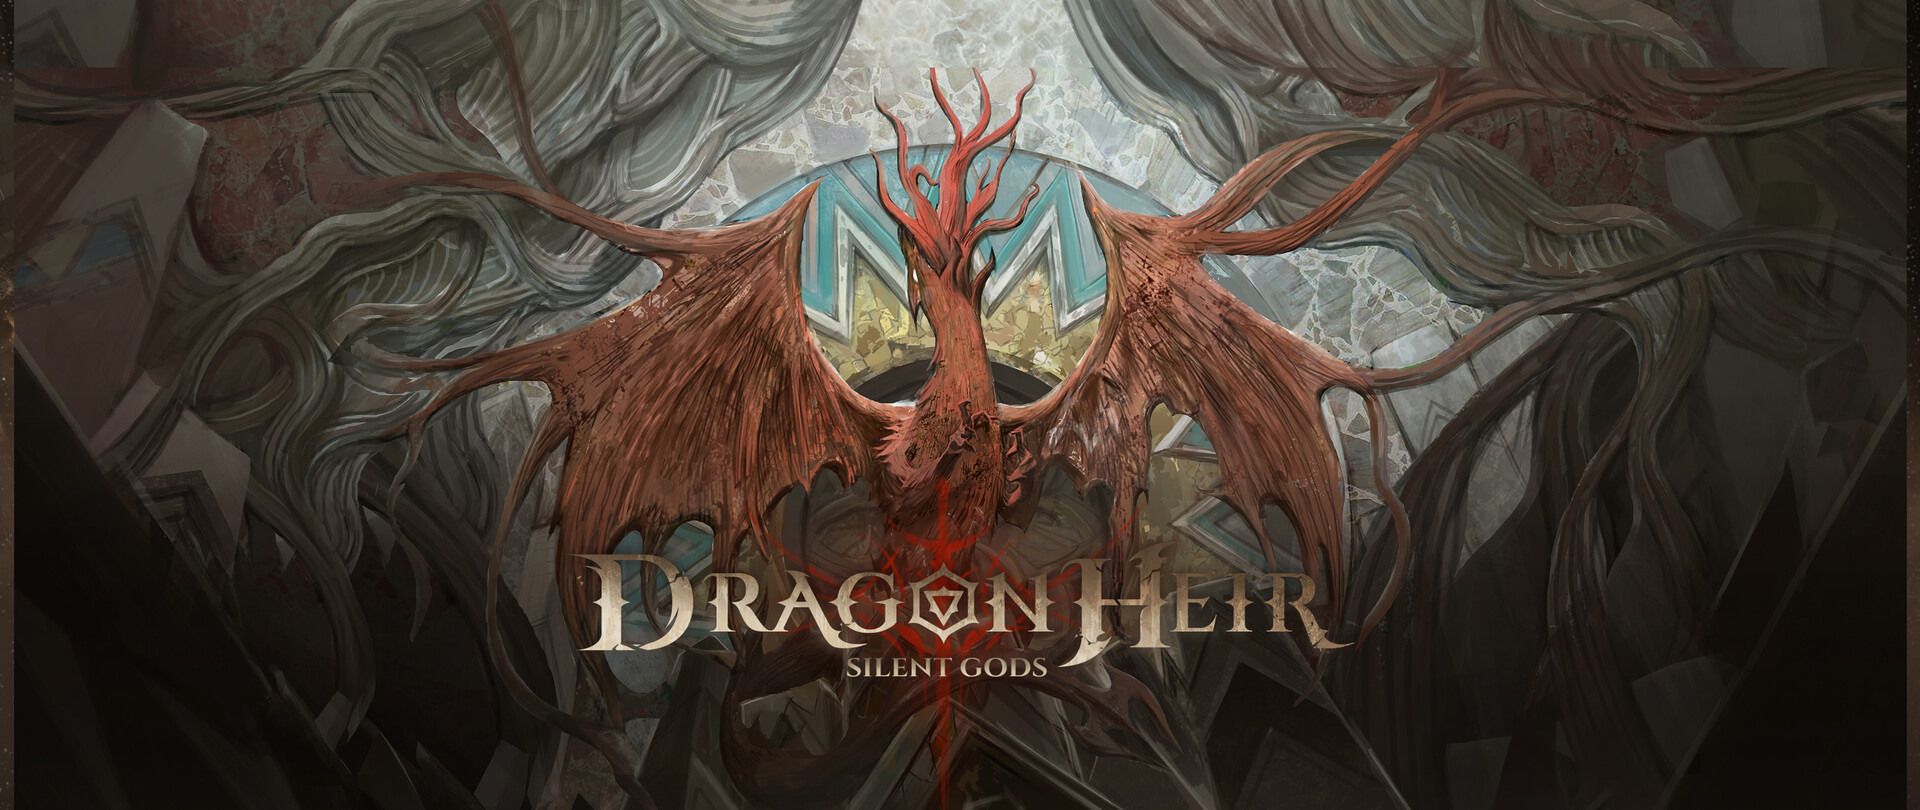 ArtStation - 为Dragonheir: Silent Gods 绘制的赛季BOSS壁画